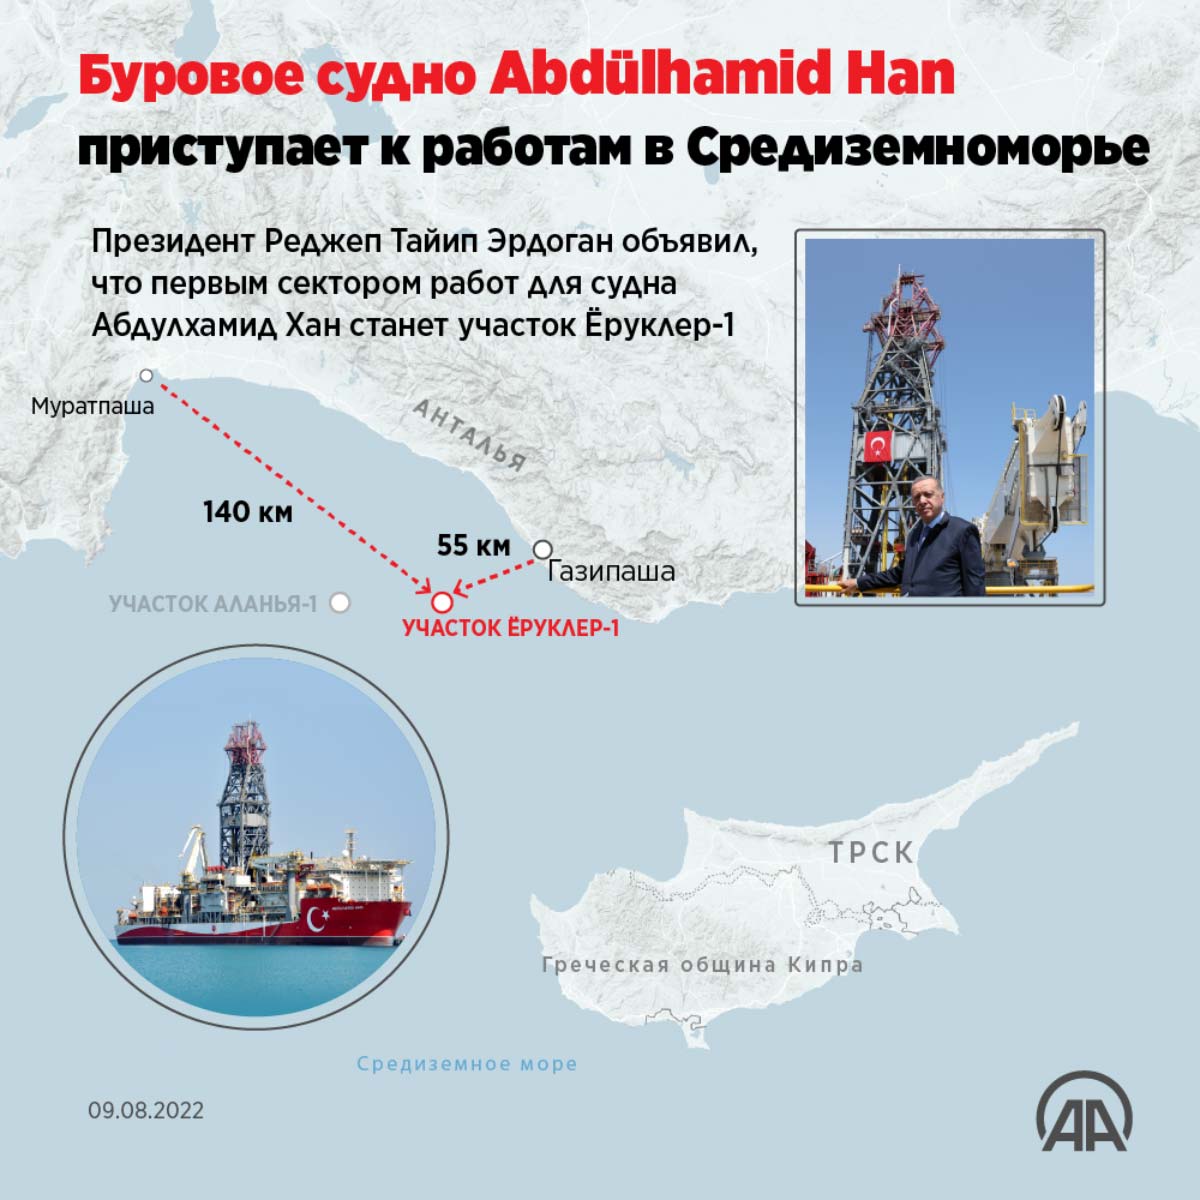 Буровое судно Abdülhamid Han приступает к работам в Средиземноморье